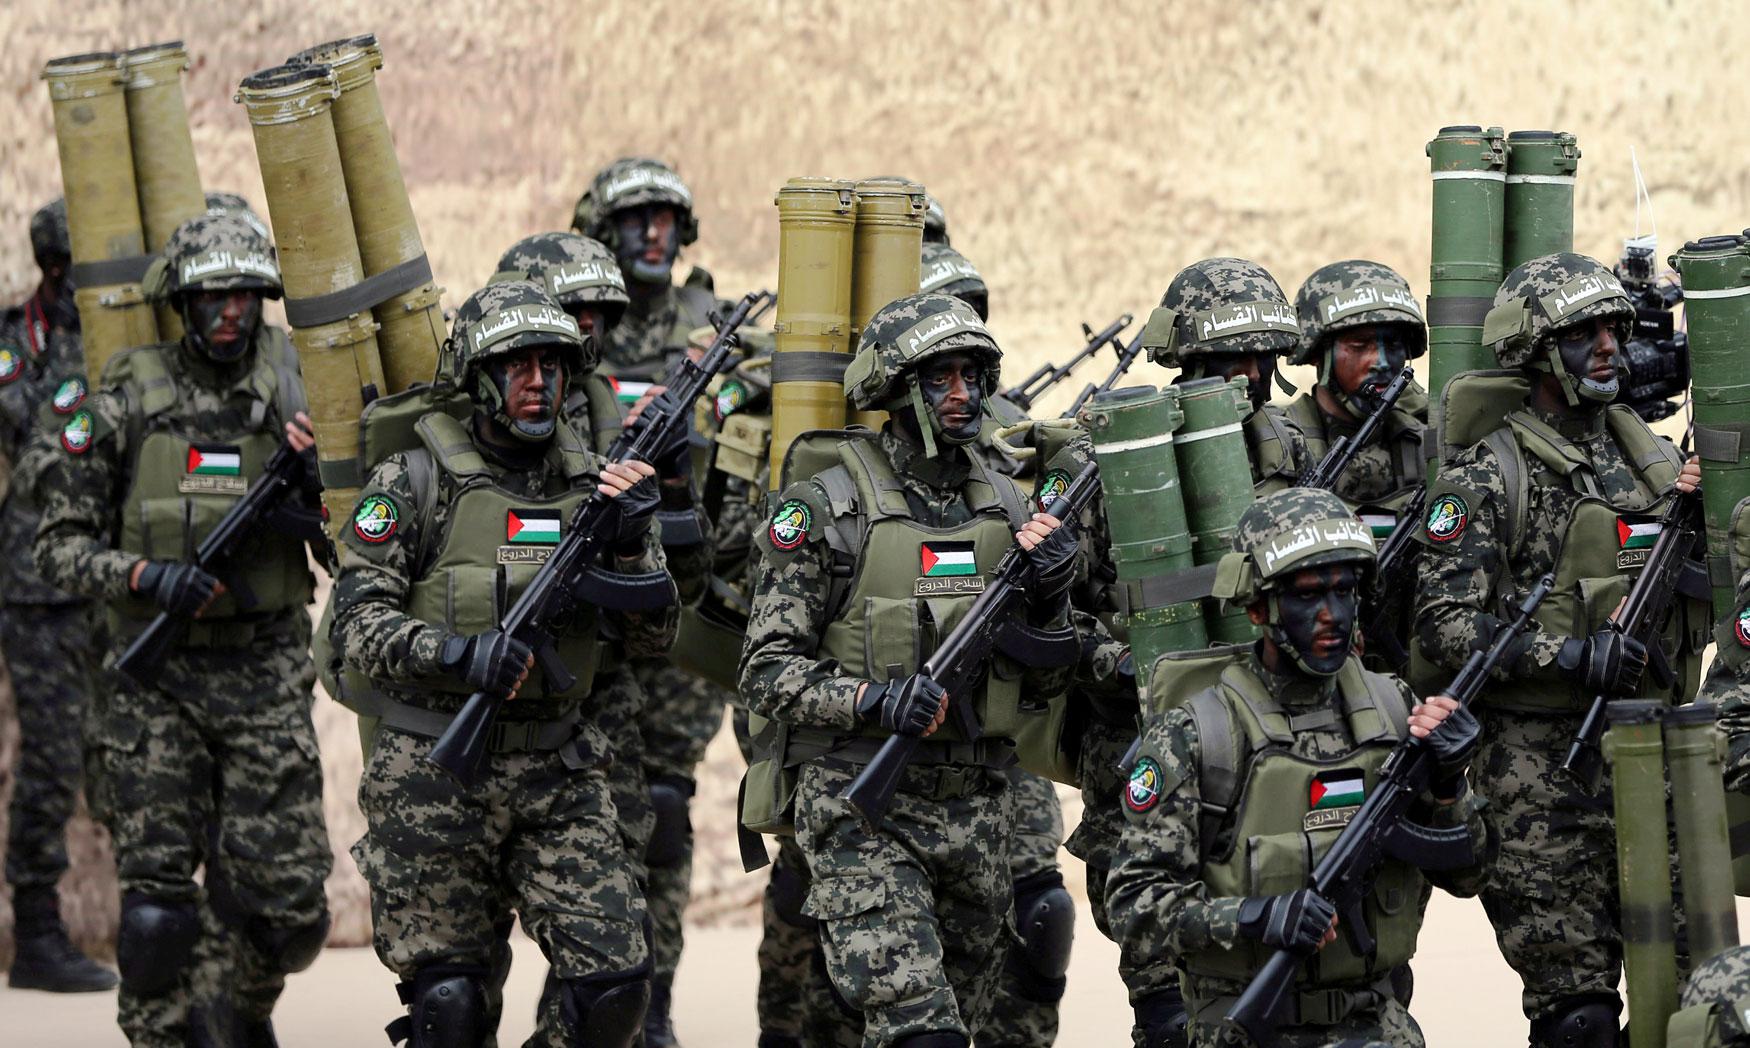 كتائب القسام الجناح العسكري لحركة حماس